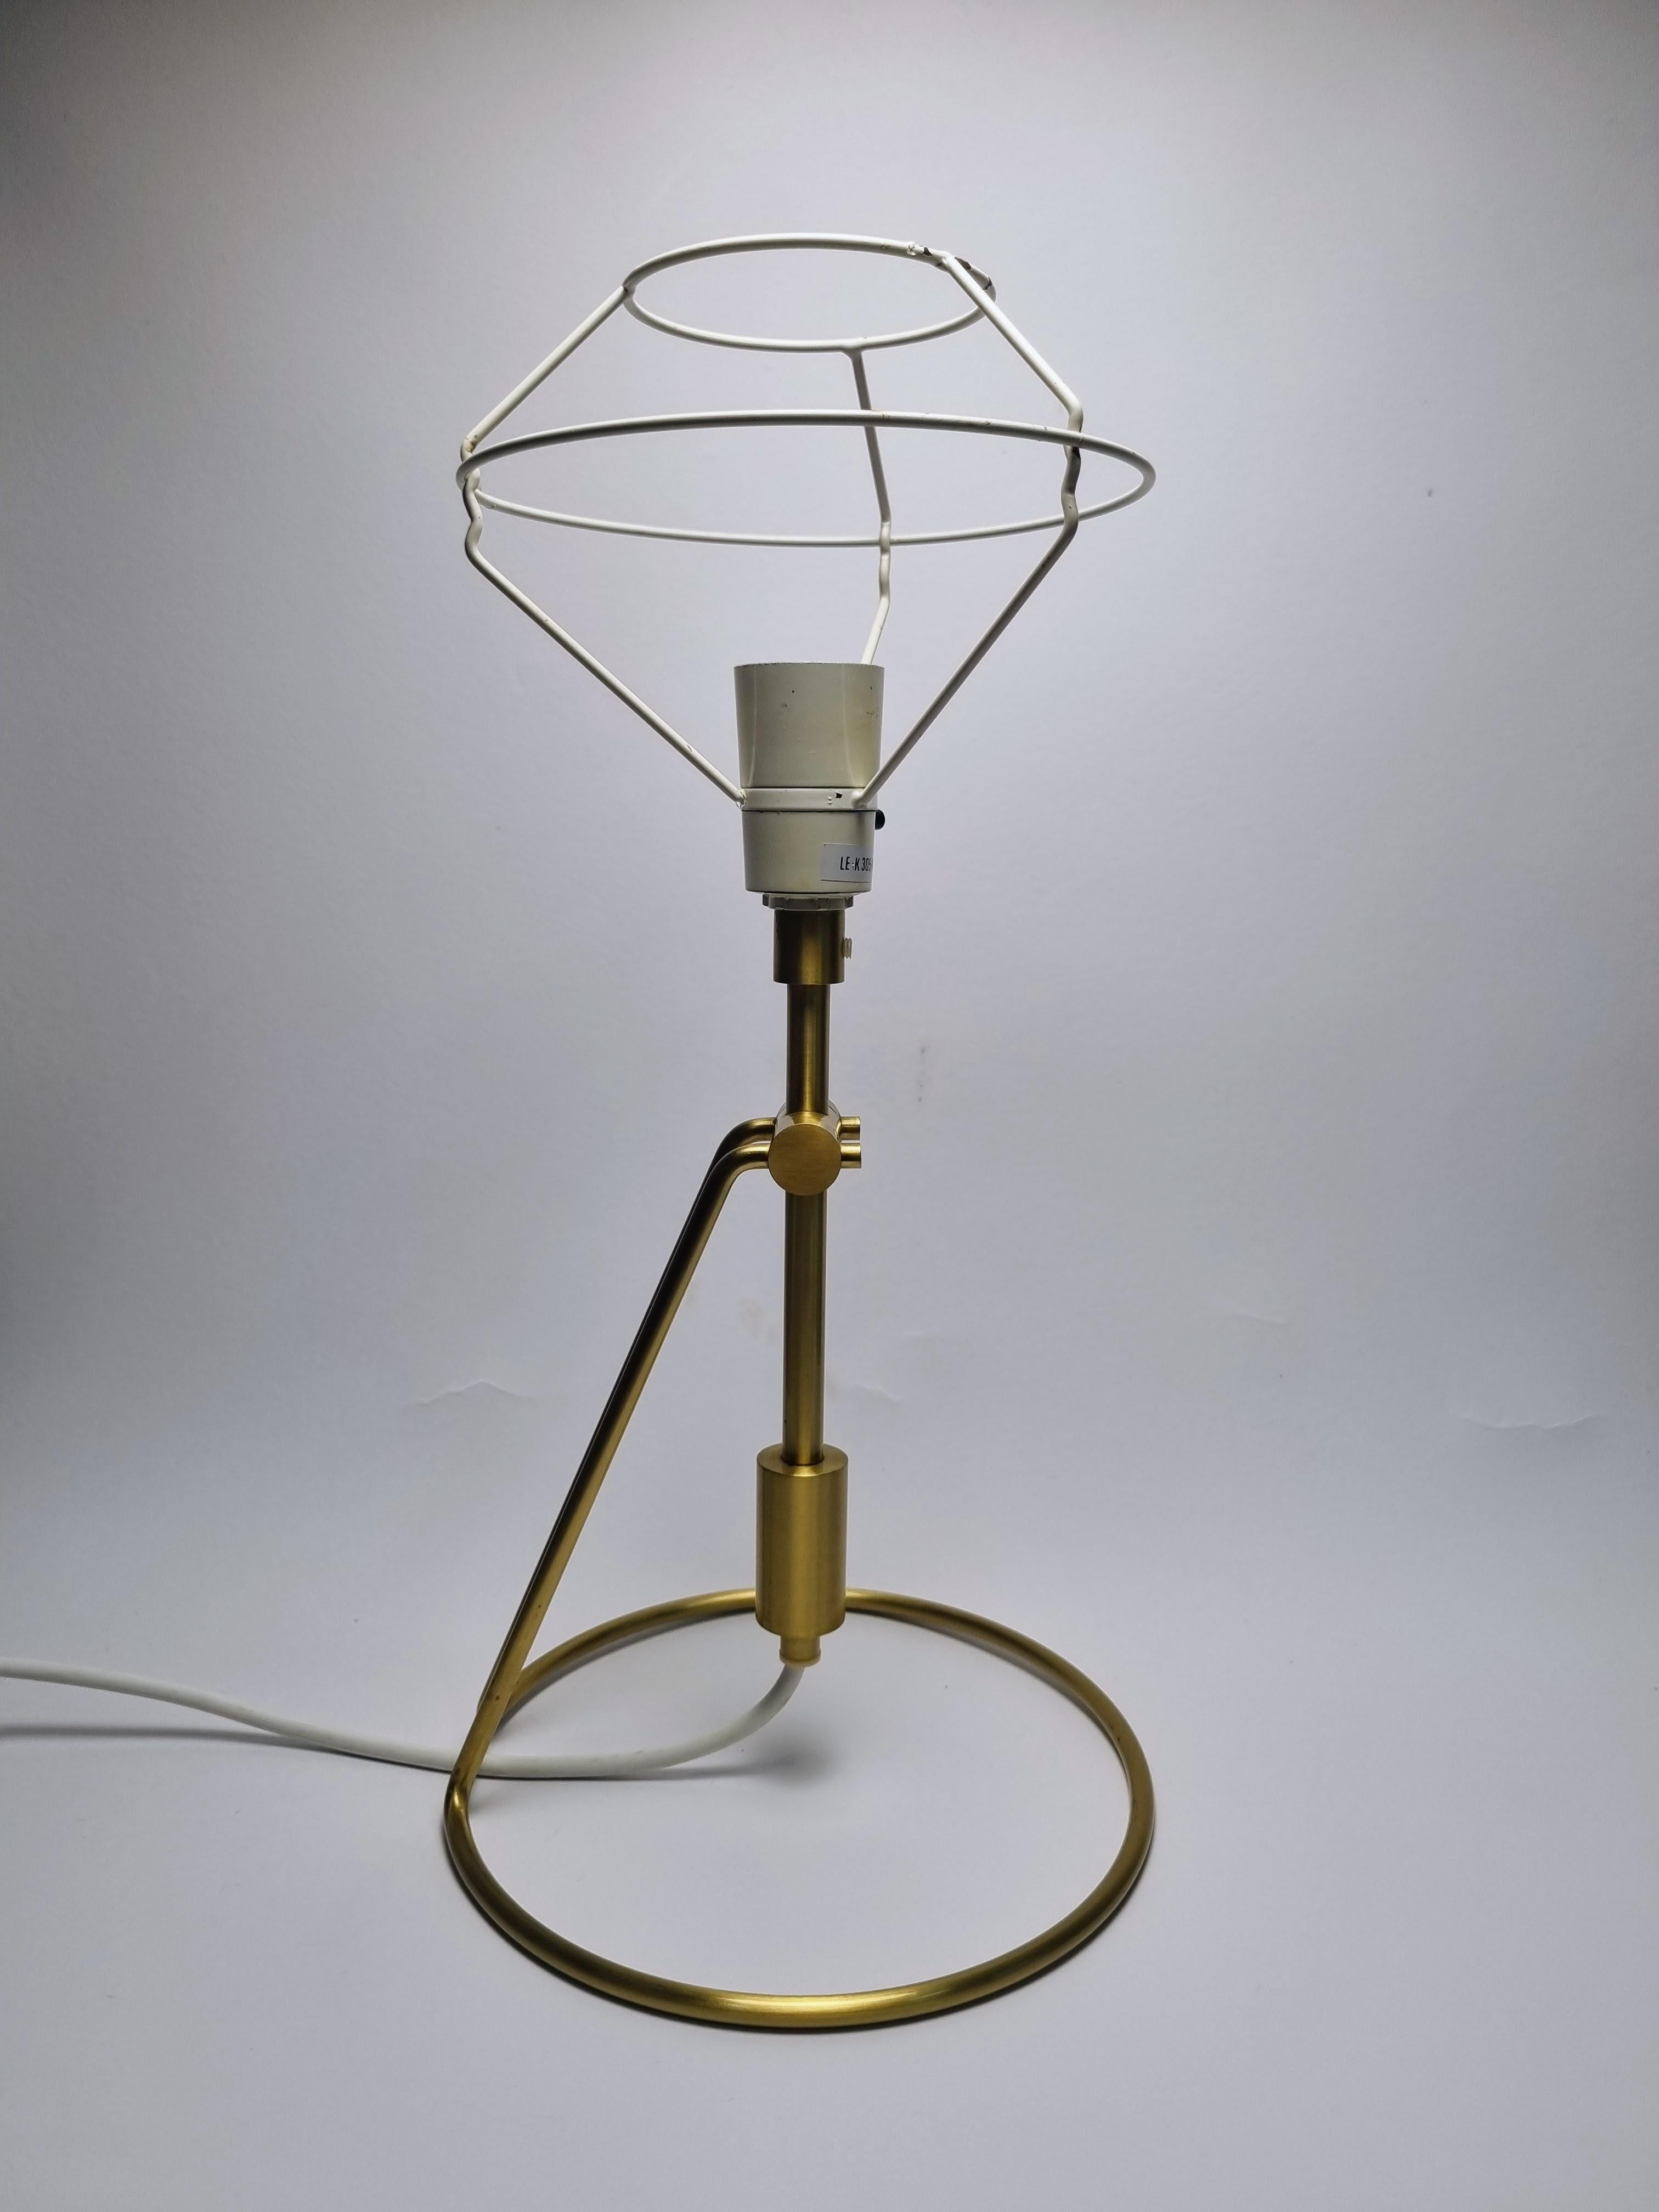 Le modèle 305 de Le Whiting a été conçu par Peter White. 
Cette lampe peut être utilisée à la fois comme lampe de table et comme applique murale. 
Elle est en laiton et est accompagnée d'un support d'abat-jour original le klimt, mais sans